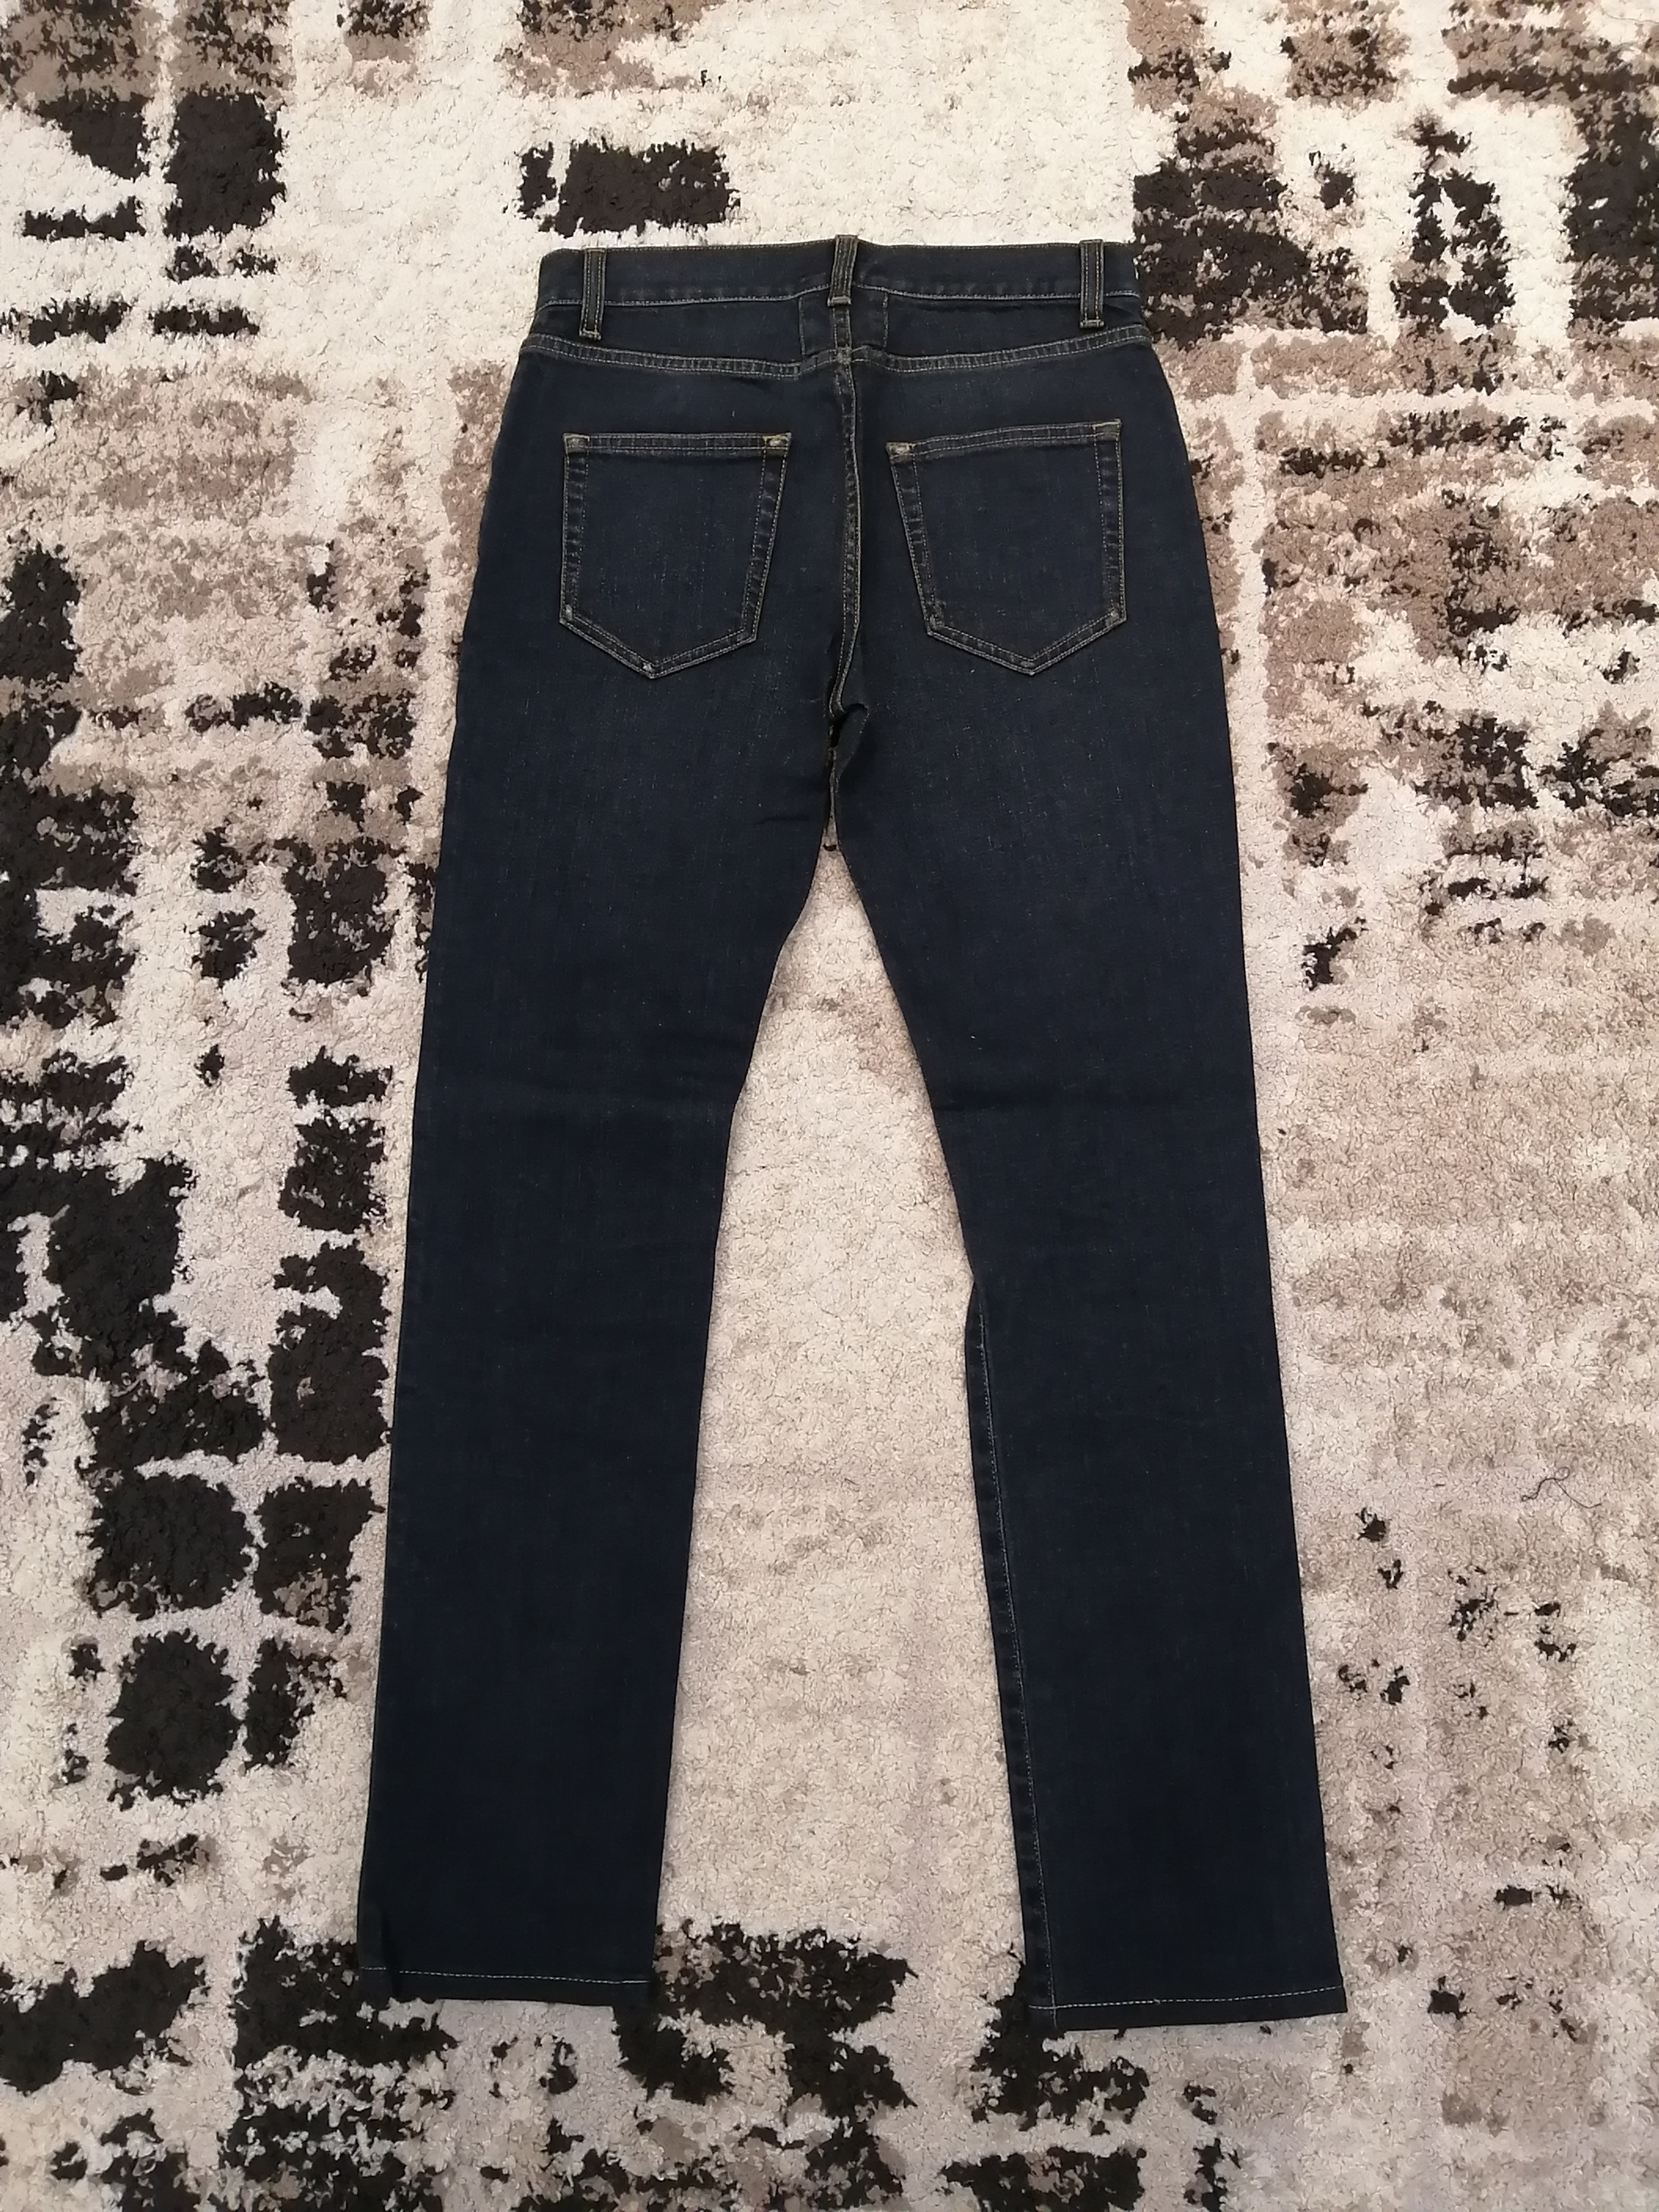 Saint Laurent Paris D02 M/SK - LW Skinny Jeans - 21